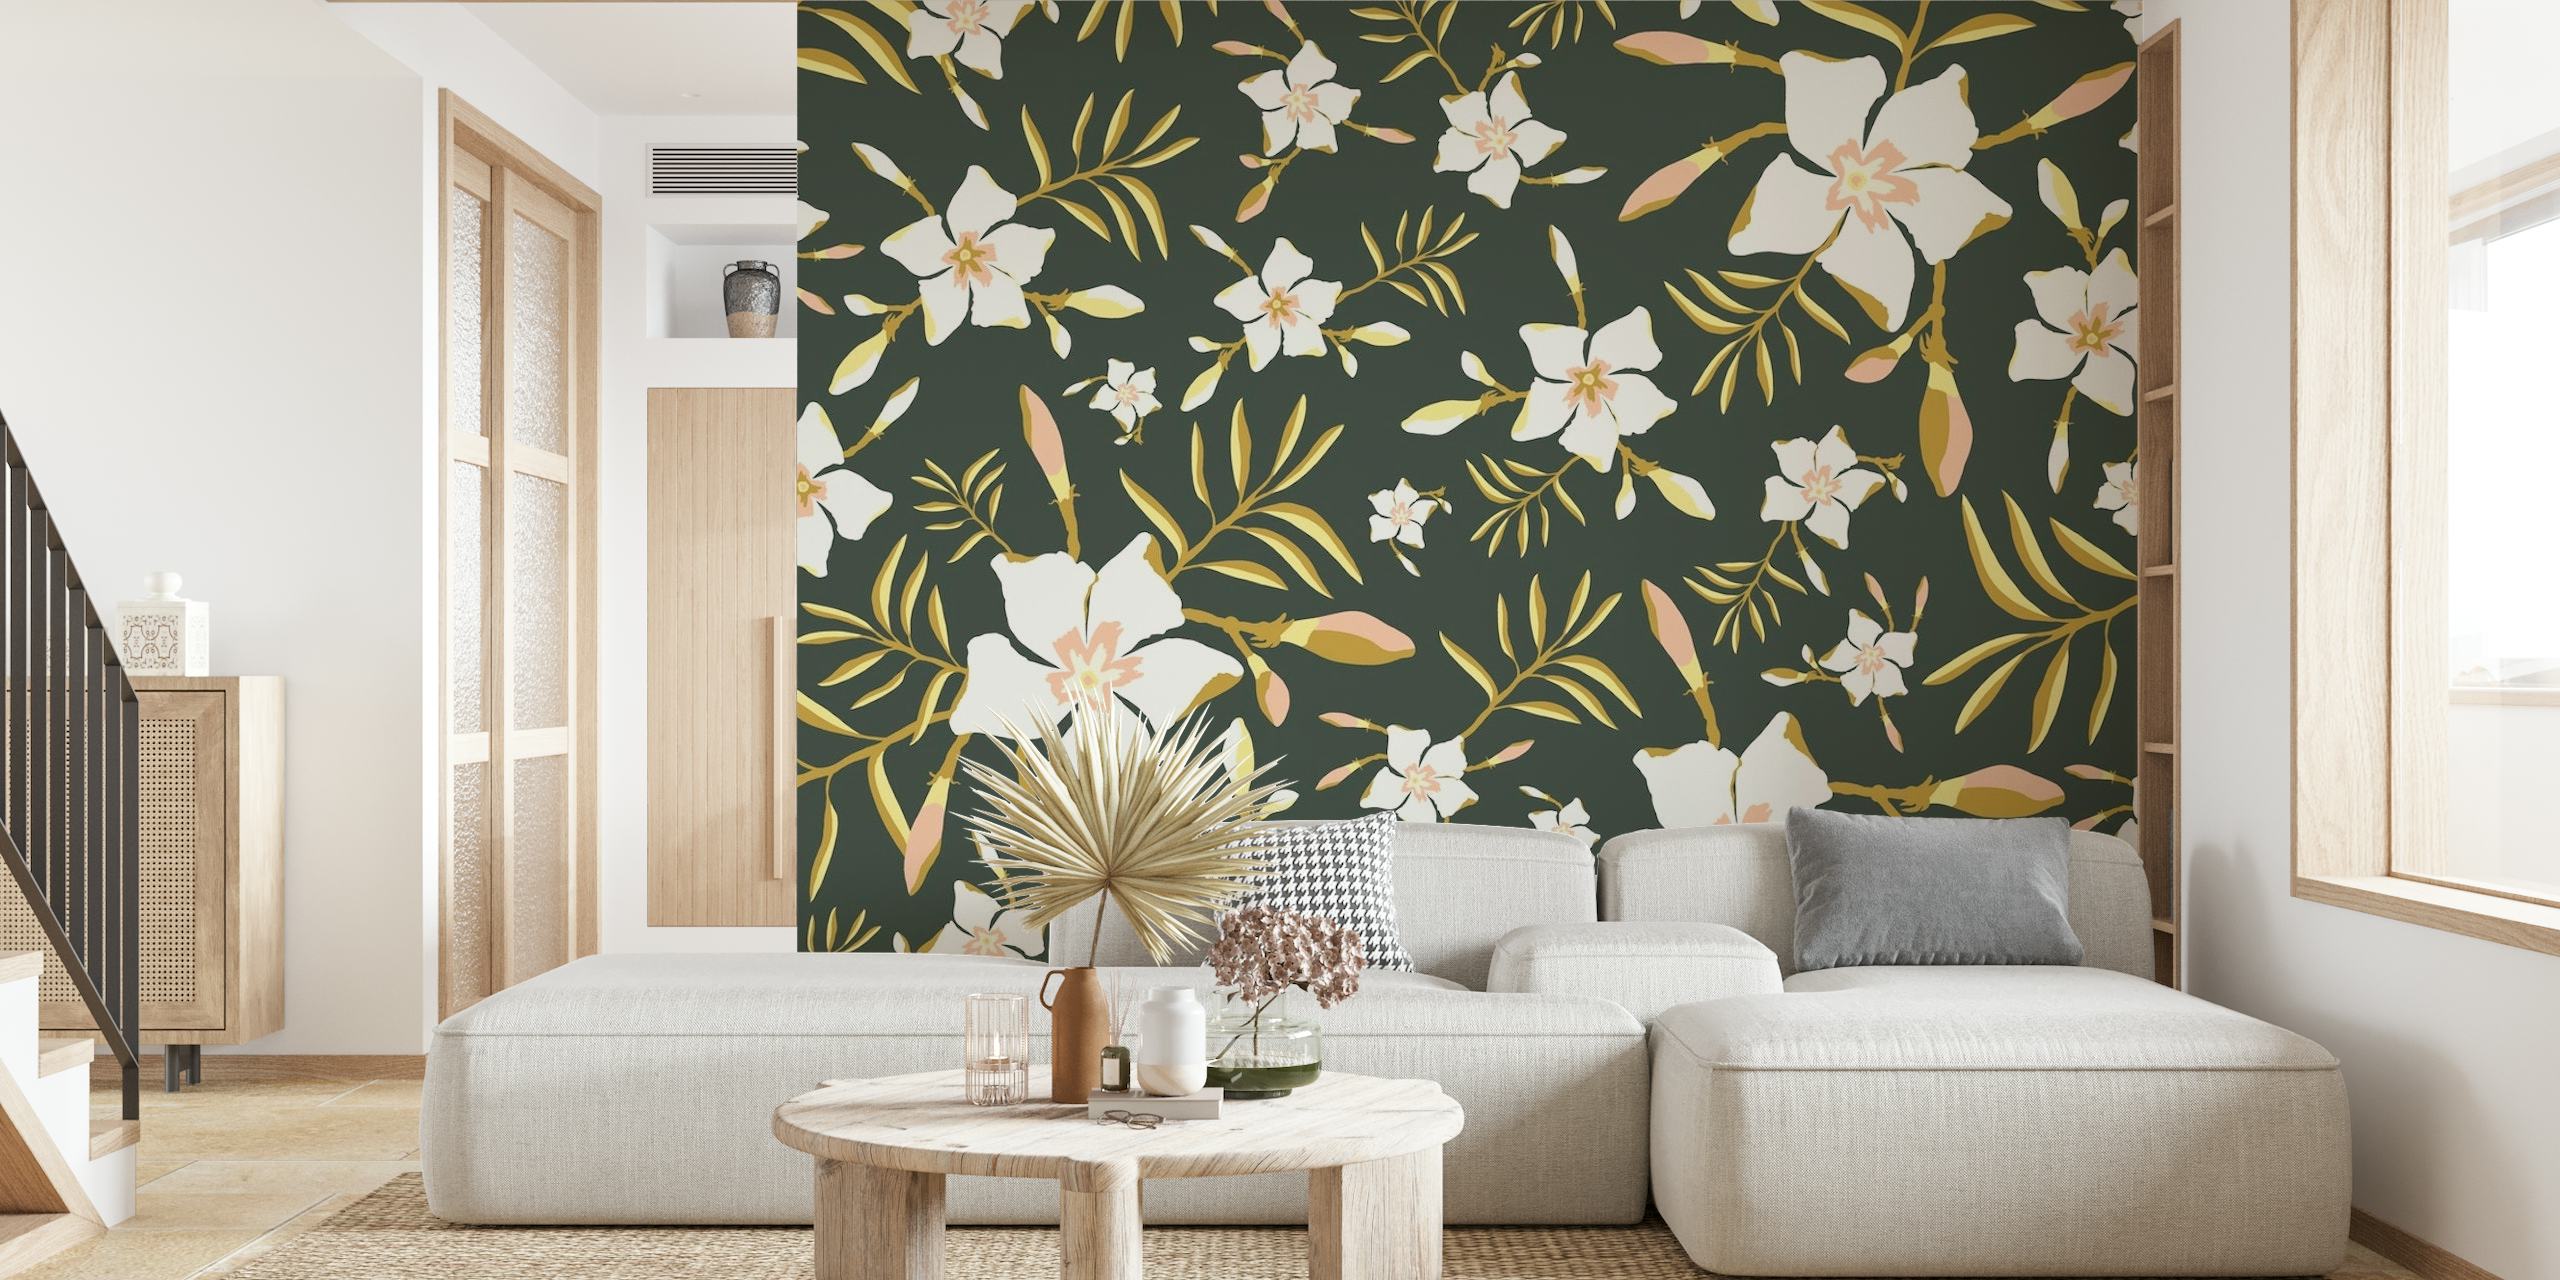 Tropisch-florales grünes Wandbild mit üppigem Laub und weißen Blüten auf dunklem Hintergrund